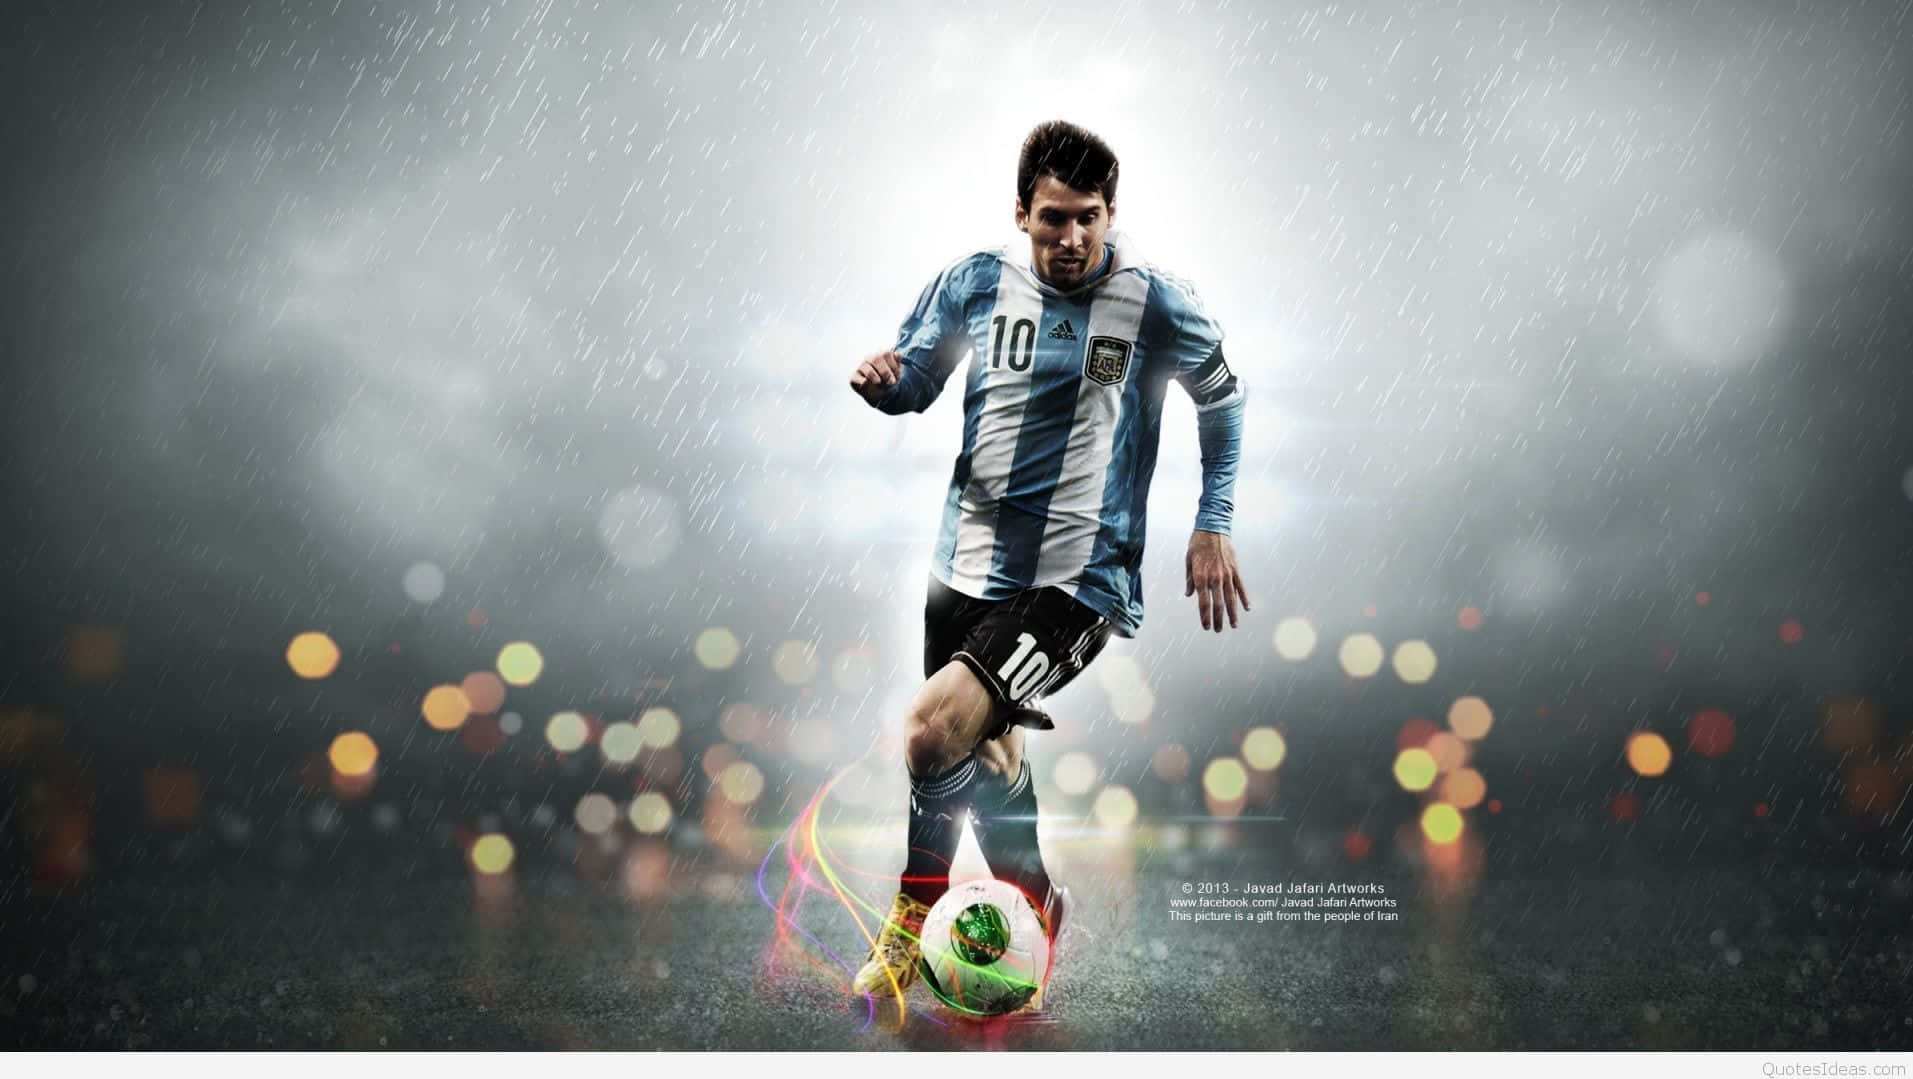 Hình nền Lionel Messi đẹp: Bạn yêu thích Lionel Messi và muốn tìm kiếm những hình nền đẹp để trang trí cho điện thoại hay máy tính của mình? Chúng tôi tổng hợp những hình ảnh đẹp nhất về Messi để bạn tha hồ lựa chọn. Từ những bức ảnh quảng cáo đến những khoảnh khắc trên sân cỏ đầy cảm xúc, bạn sẽ không thể rời mắt khỏi những thước hình nền này.